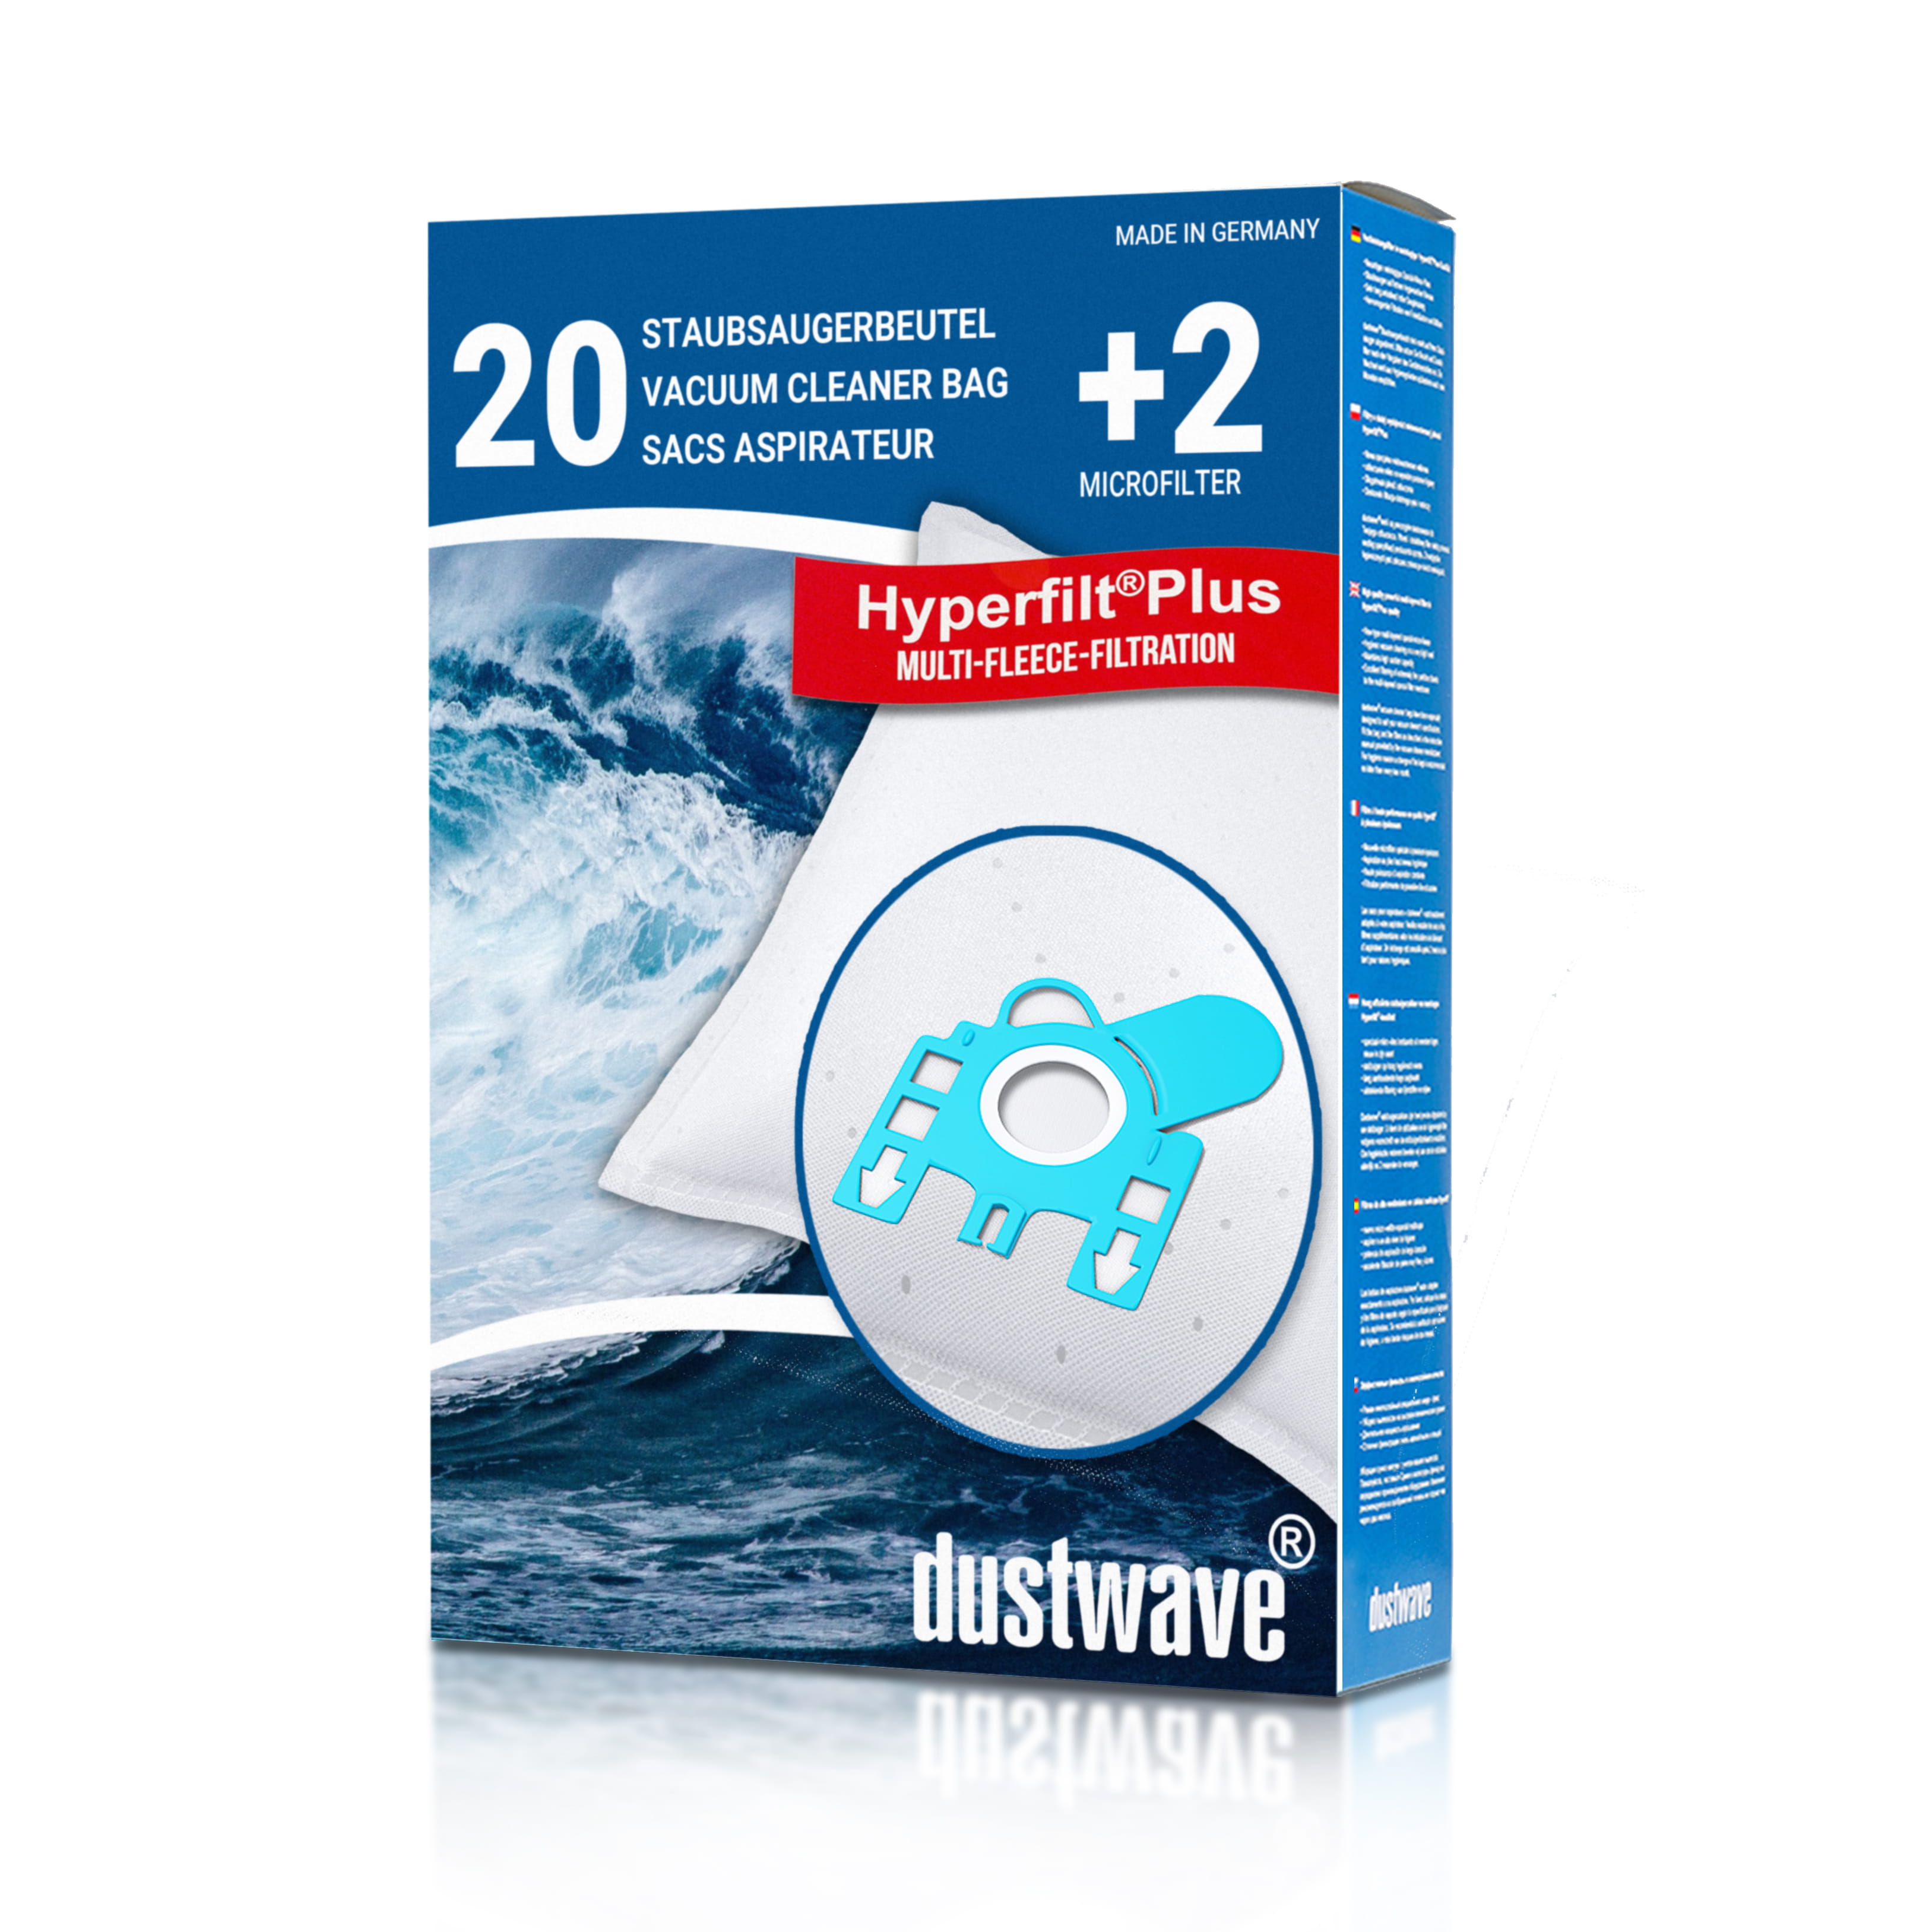 Dustwave® 20 Staubsaugerbeutel für Hoover PC20PET 011 - hocheffizient, mehrlagiges Mikrovlies mit Hygieneverschluss - Made in Germany